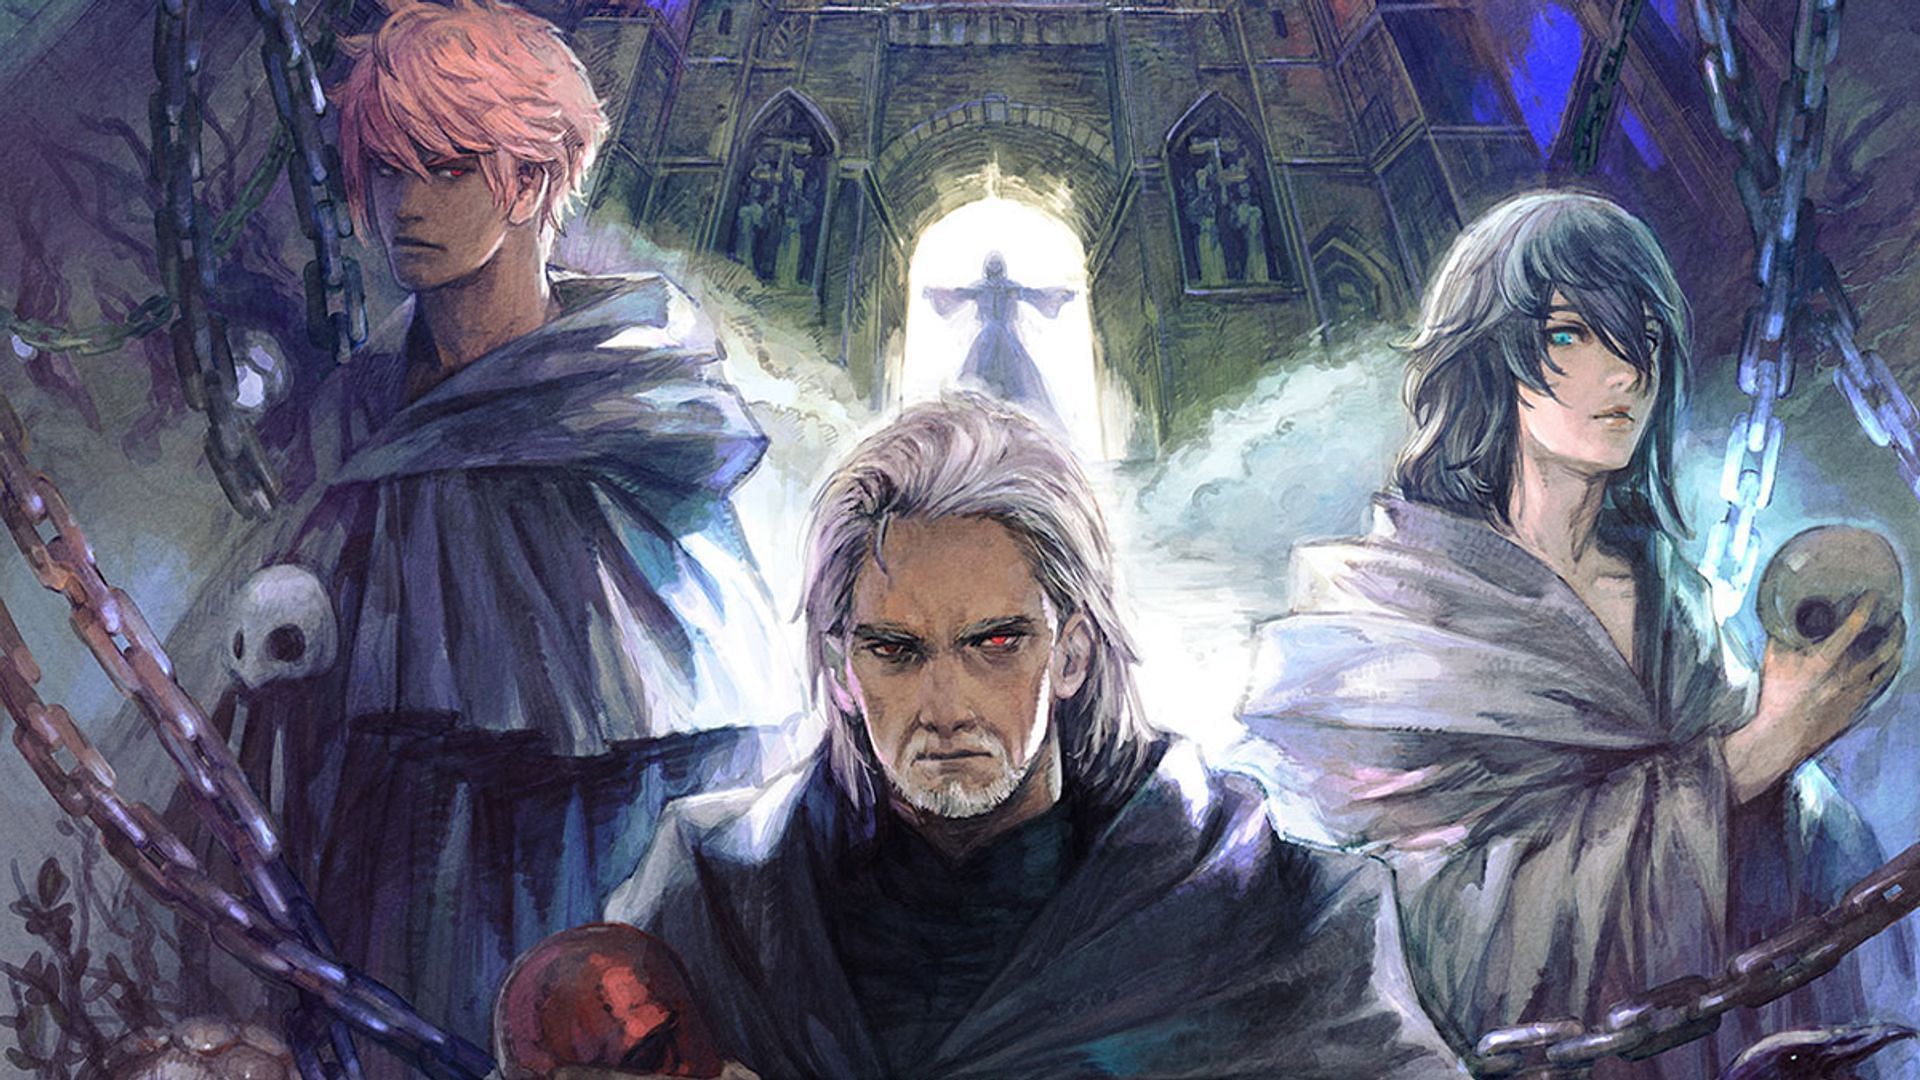 Official artwork for Final Fantasy XIV (Image via Square Enix)